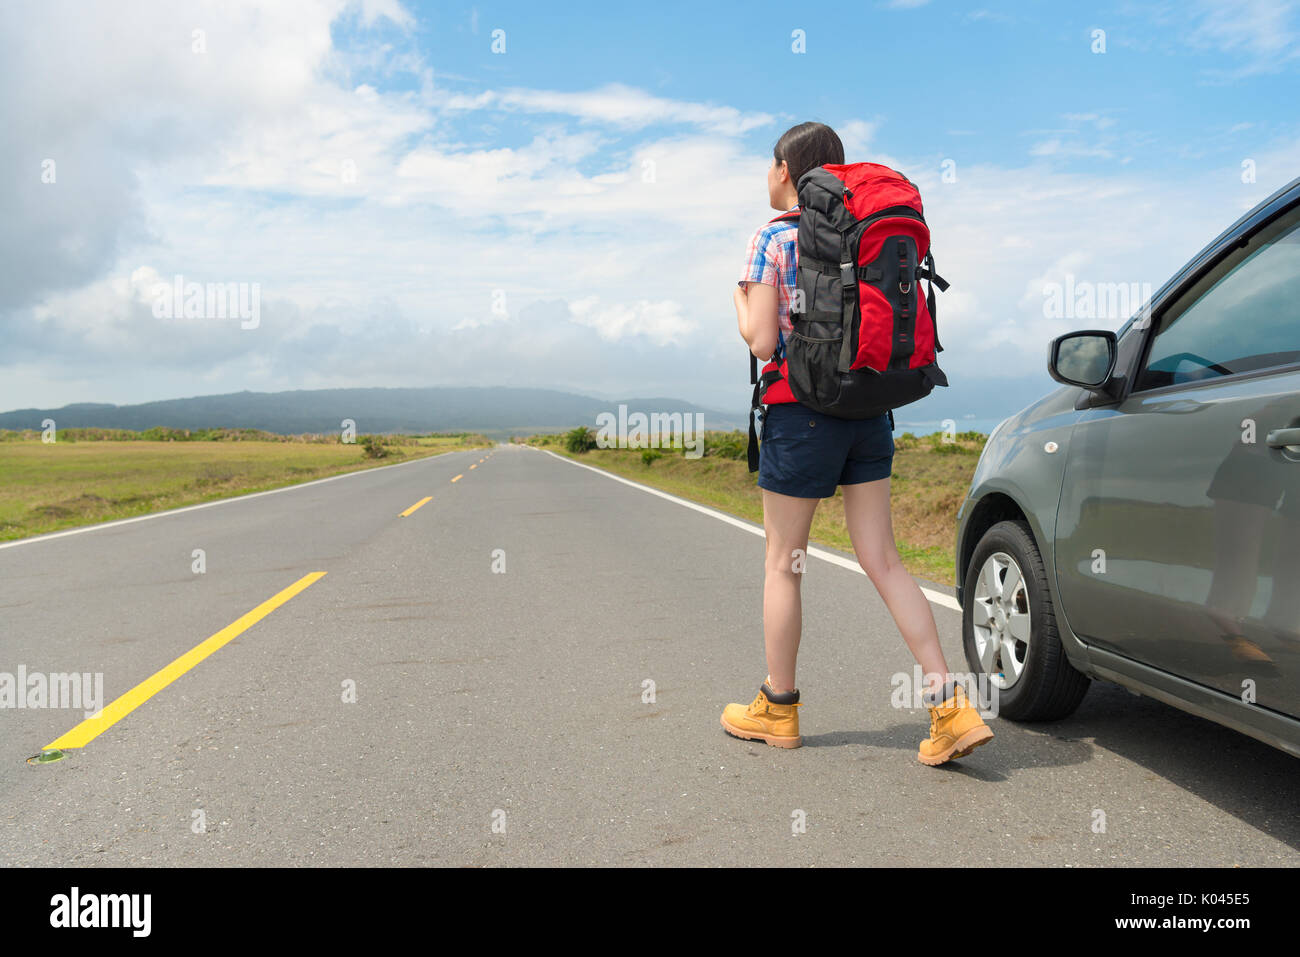 Elegante gemächliche weibliche Backpacker auf Asphalt beobachten entfernte Bergkulisse und geparkte Autos in der Straße am Sommer, Urlaub reisen. Stockfoto